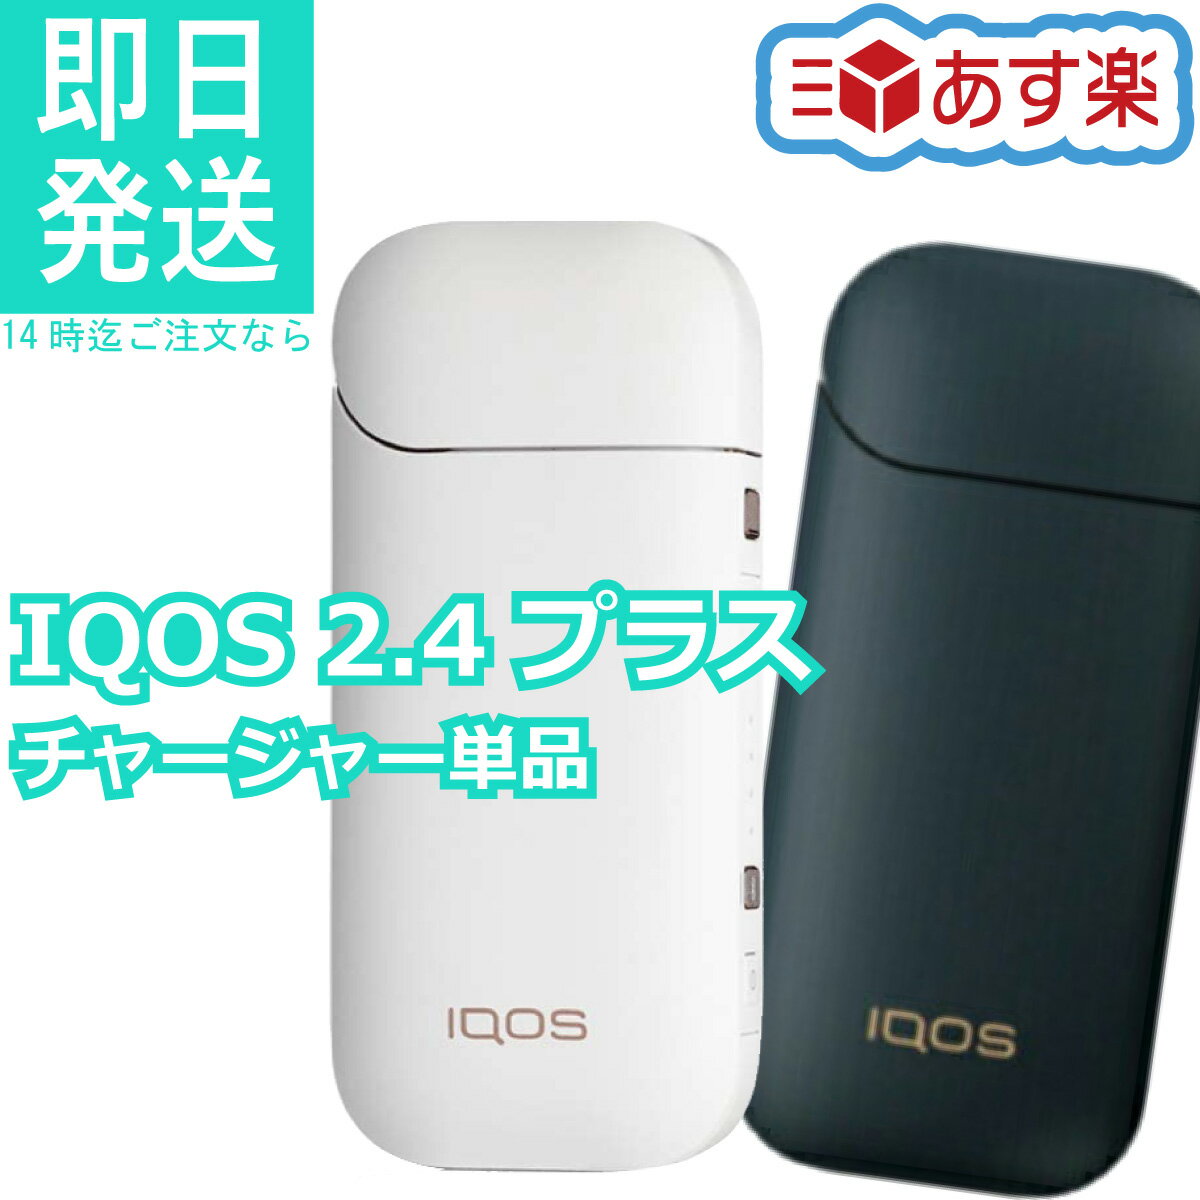 アイコス 2.4 Plus iQOS 2.4 プラス 【チャージャー単品】 電子タバコ